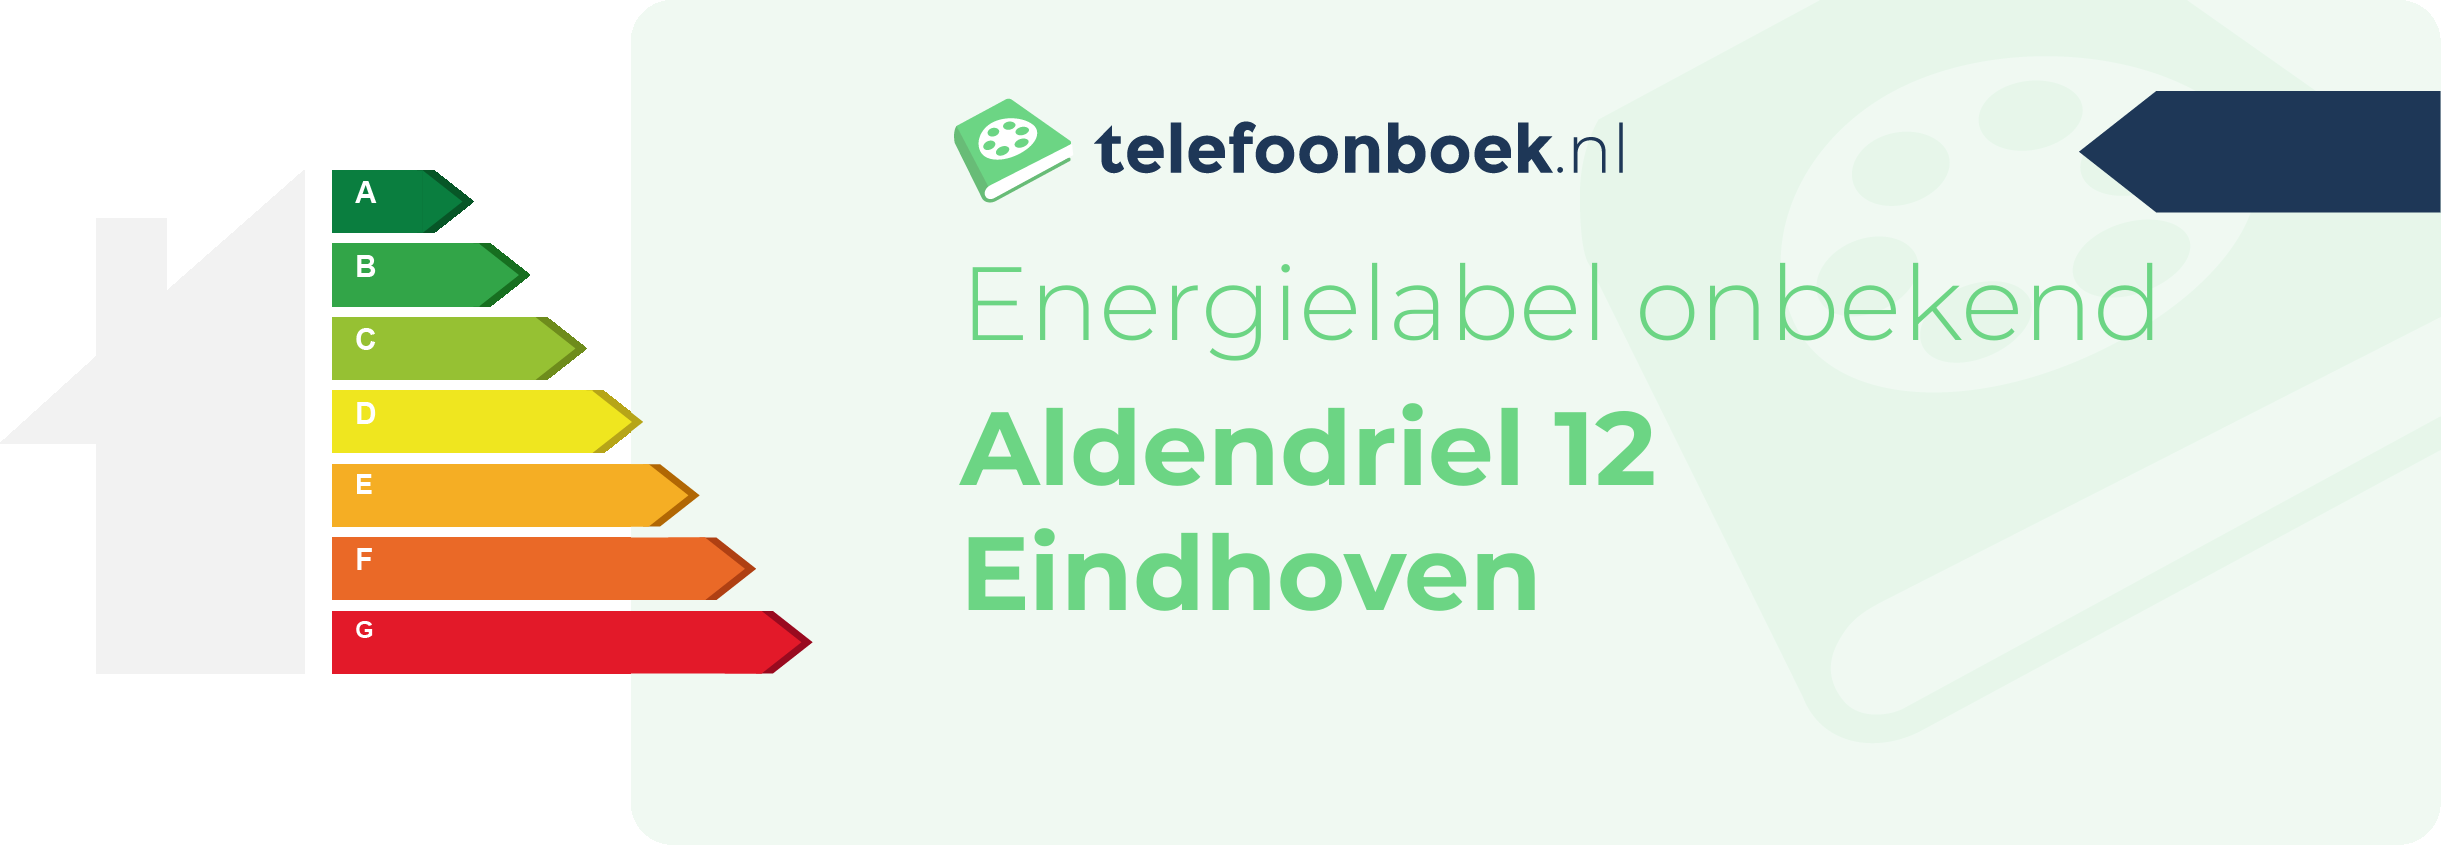 Energielabel Aldendriel 12 Eindhoven